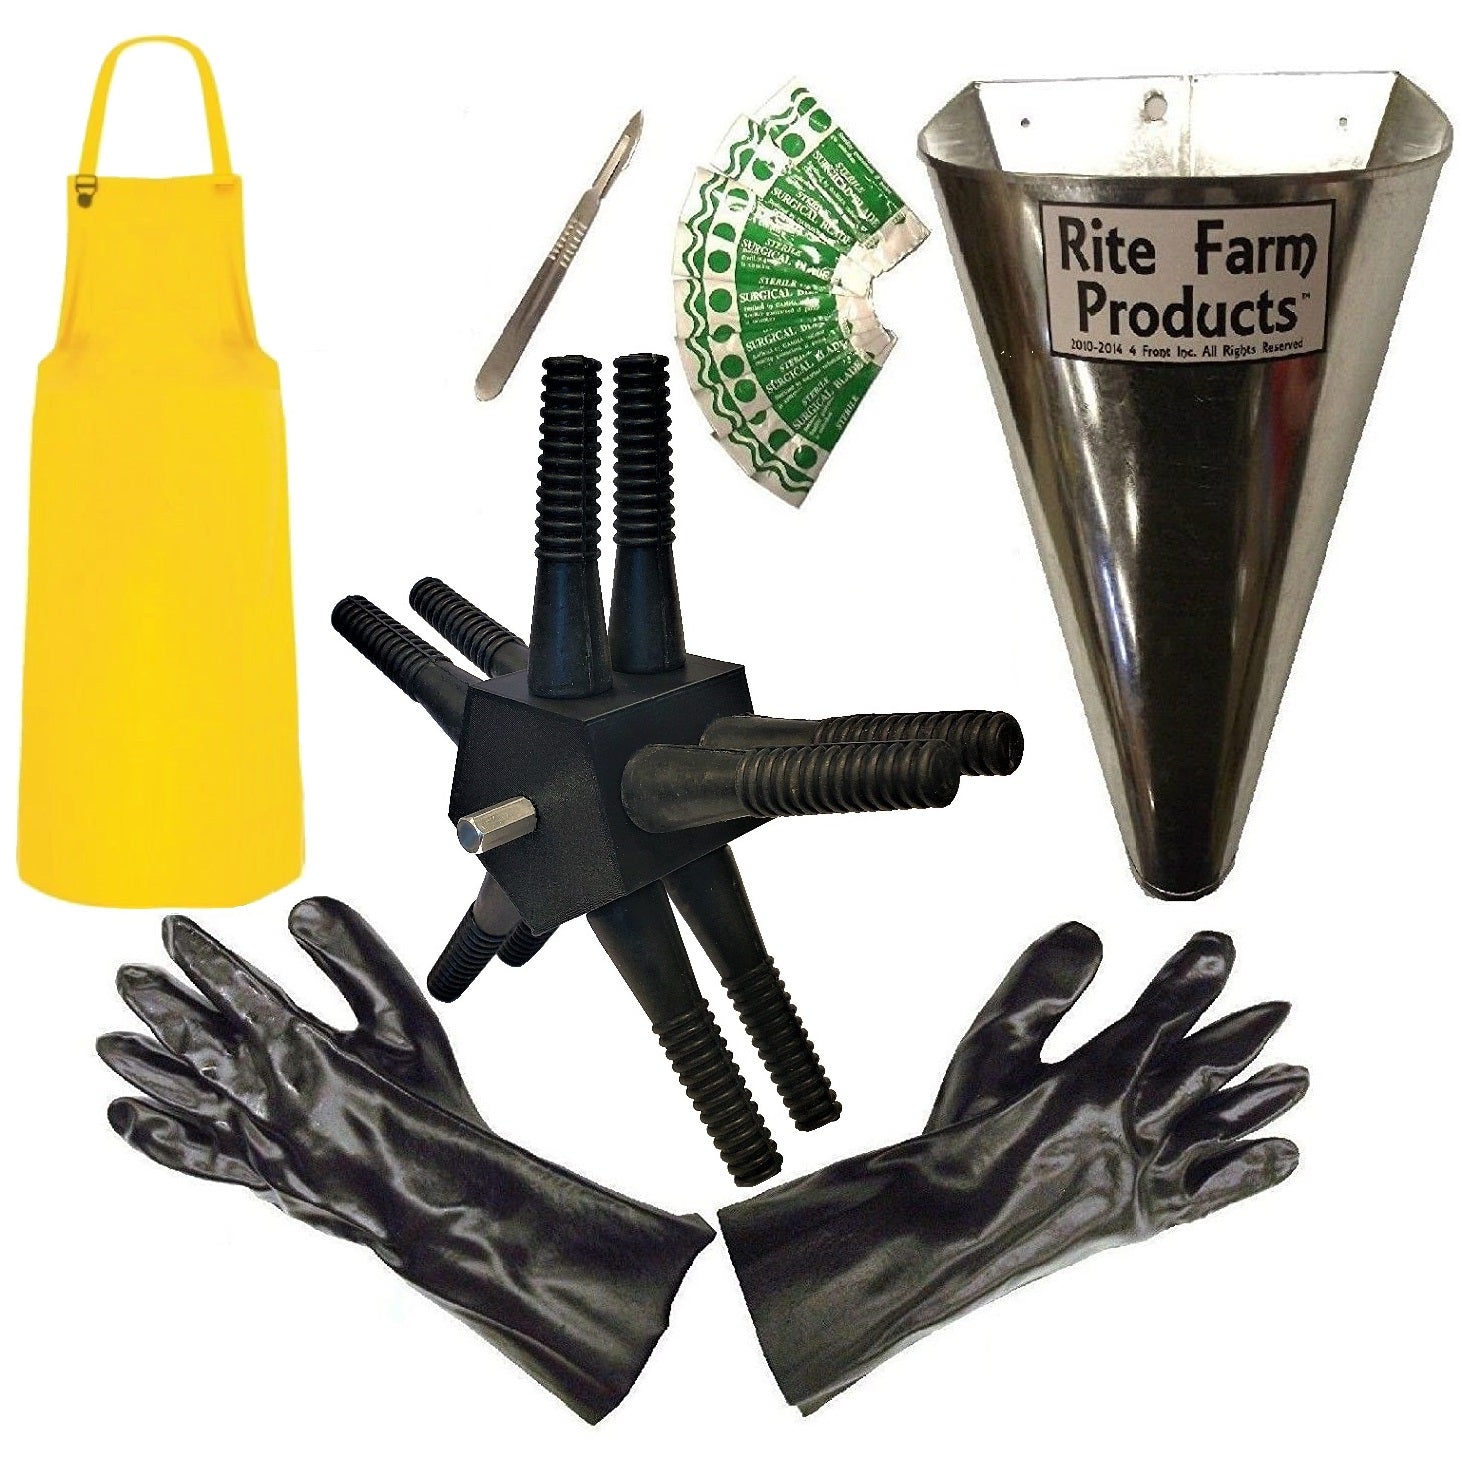 L10 plucker, kill cone, scalpel, 10 blades, gloves, apron